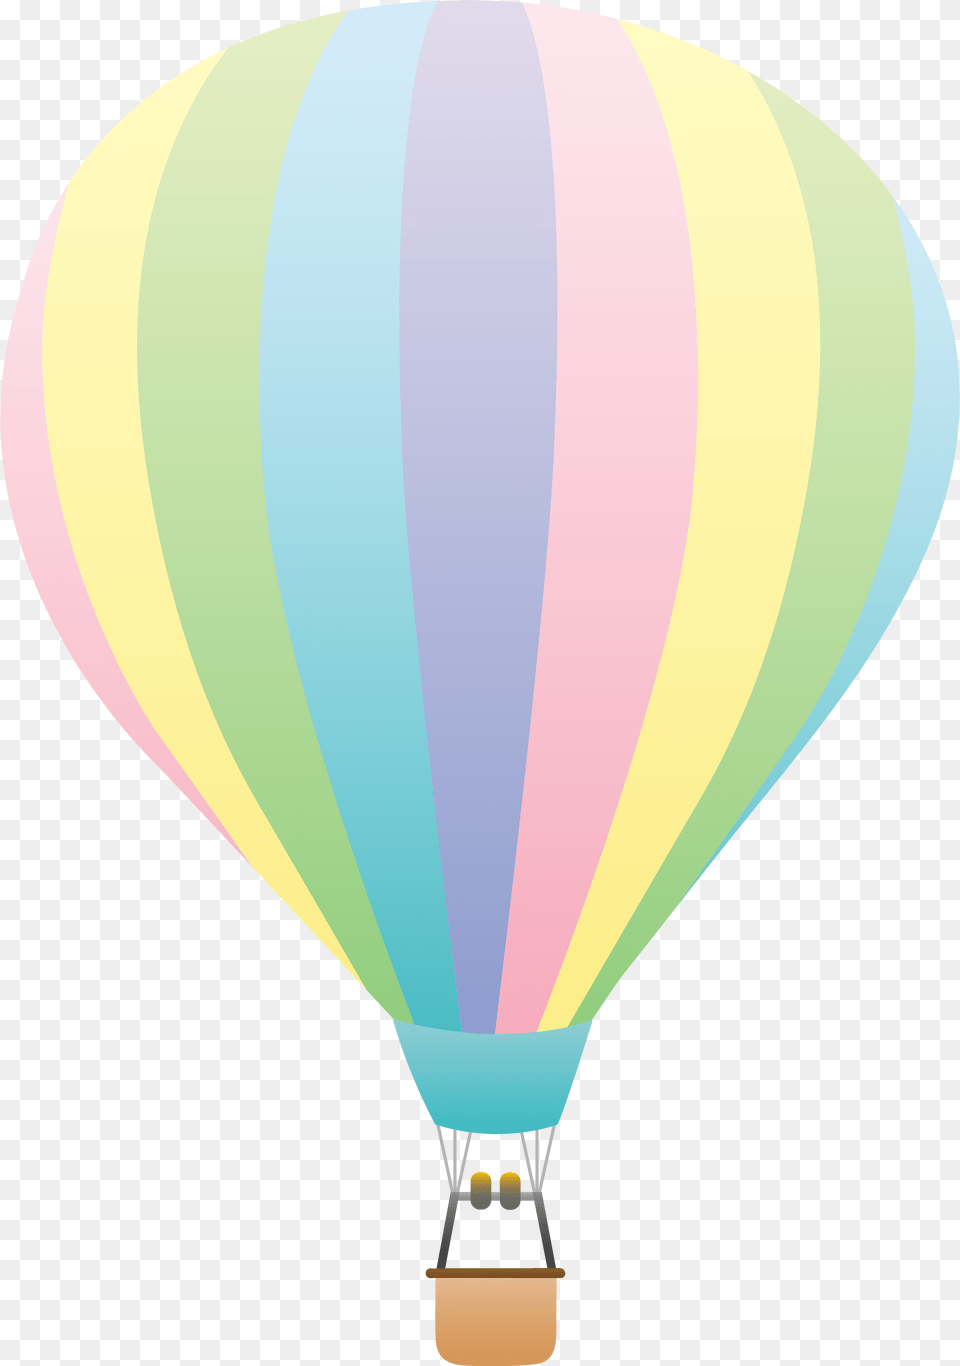 Hot Air Balloon Pink And Blue, Aircraft, Transportation, Vehicle, Hot Air Balloon Free Png